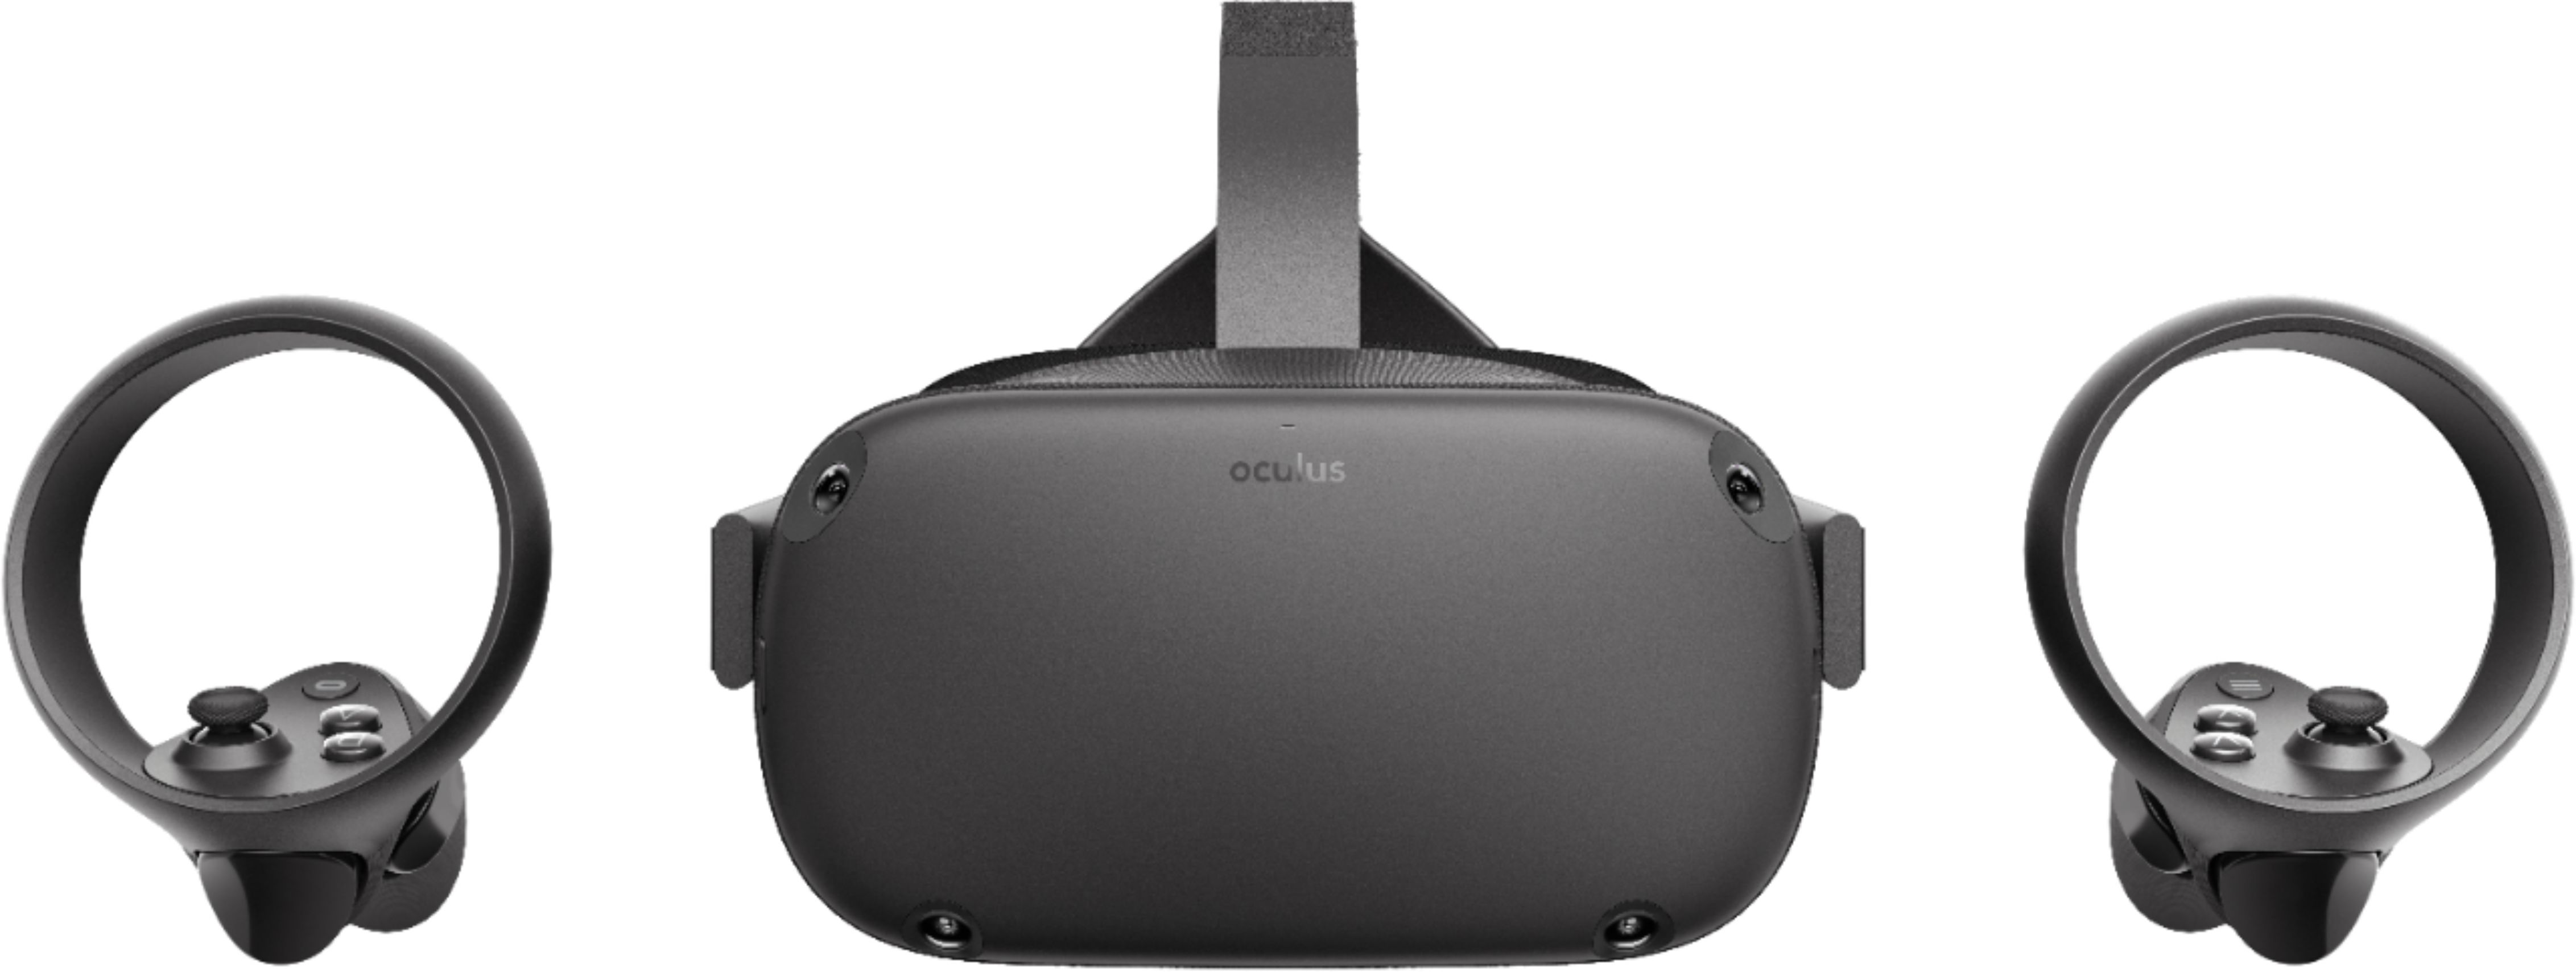 oculus quest best buy price